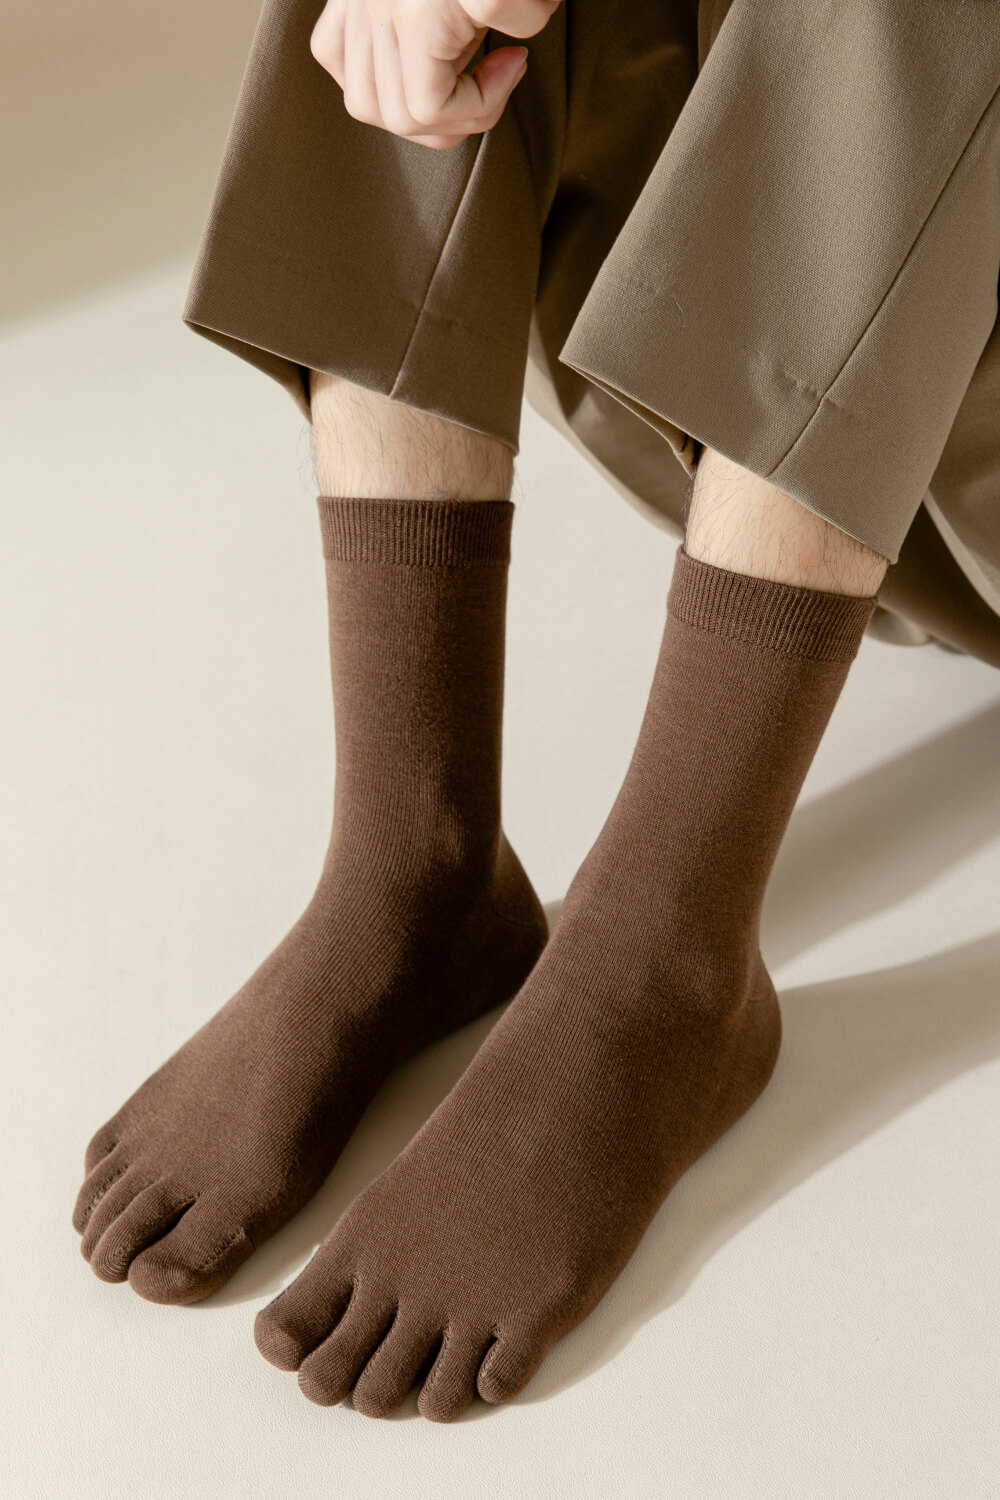 NicoFun 愛定做 2雙 五趾中筒襪 分趾襪 隱形襪 木